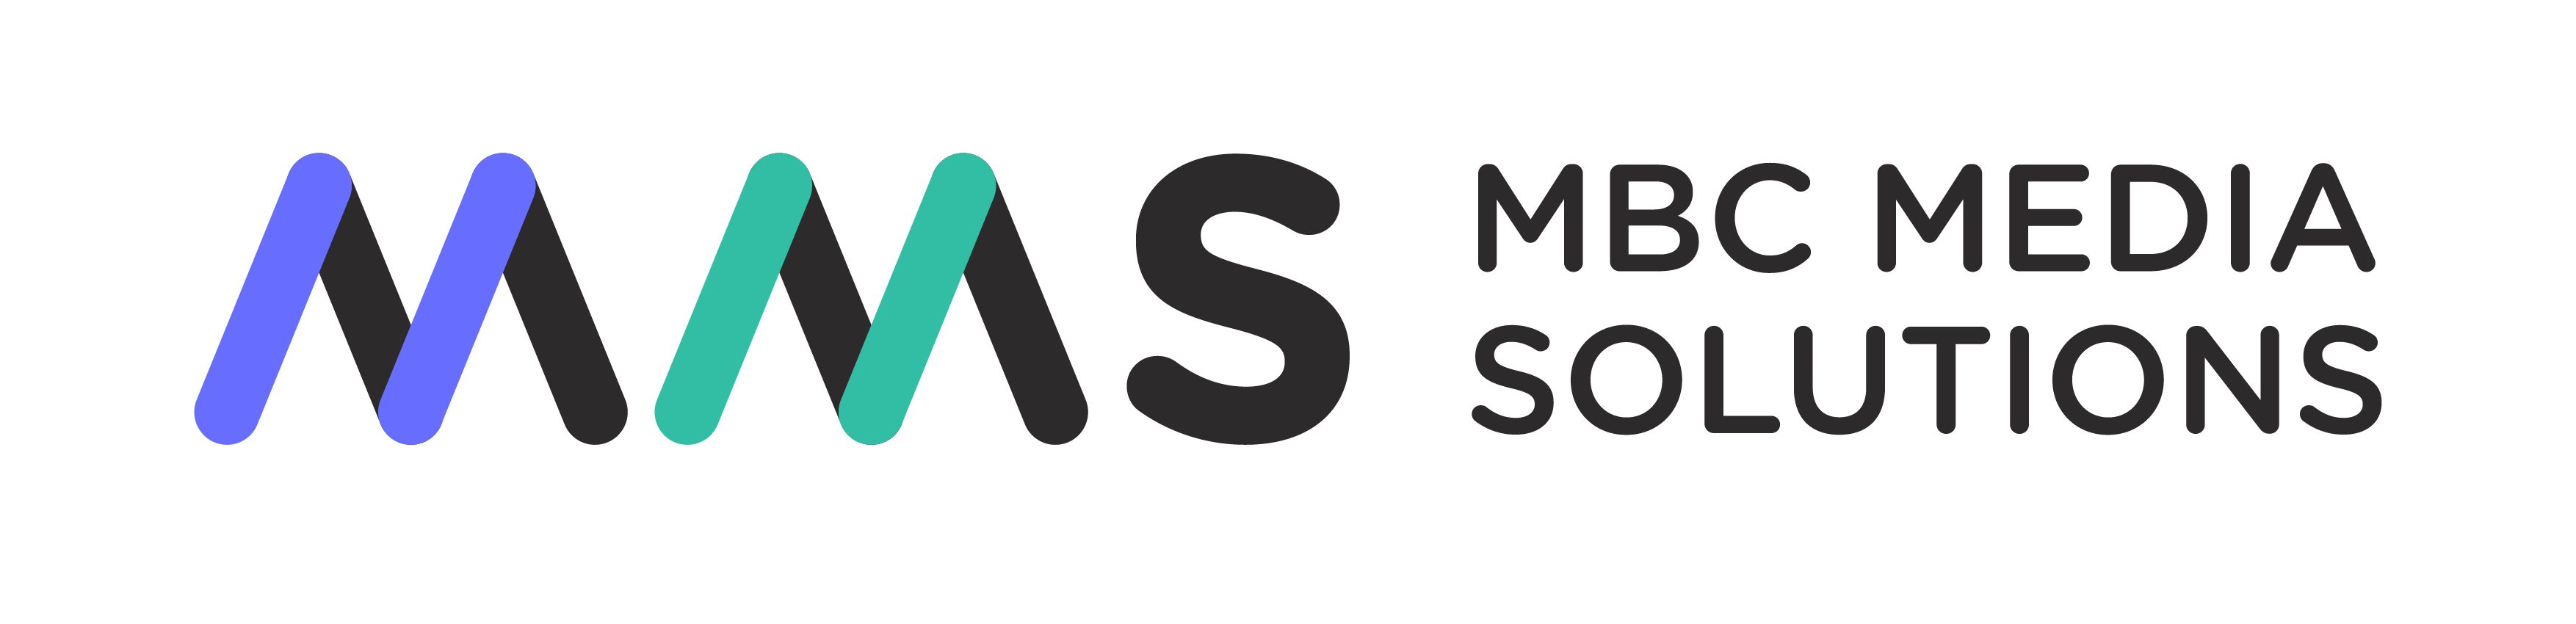 M&M's Logo Font - Dafont Free